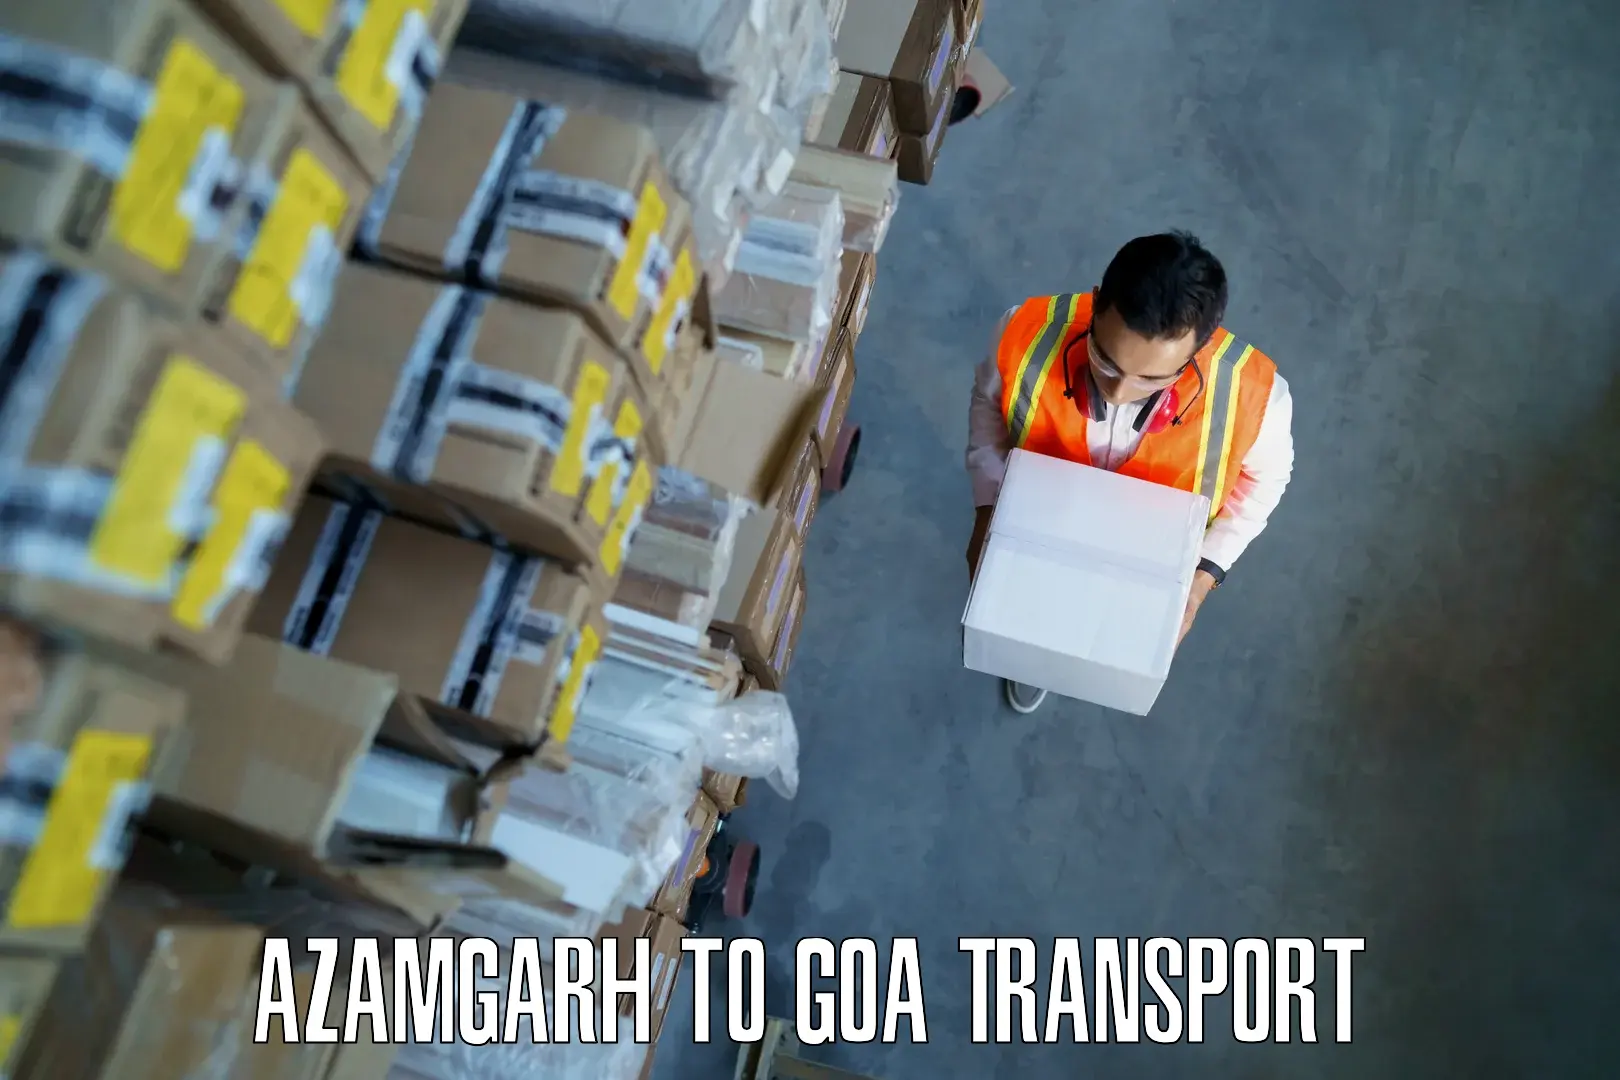 Bike shipping service Azamgarh to Bardez